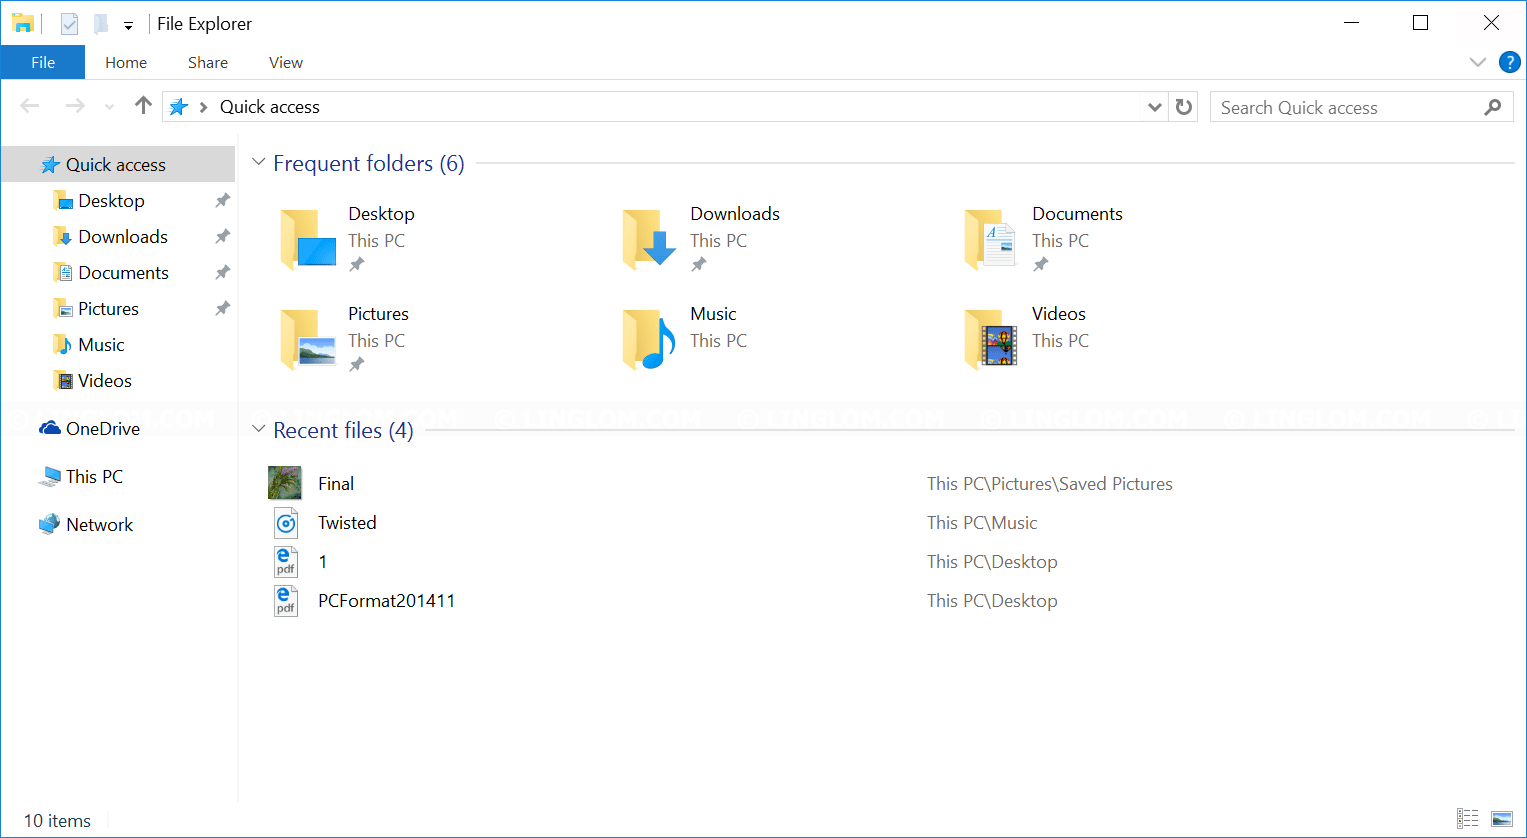 hur ändrar jag standardvyn med avseende på Windows Explorer